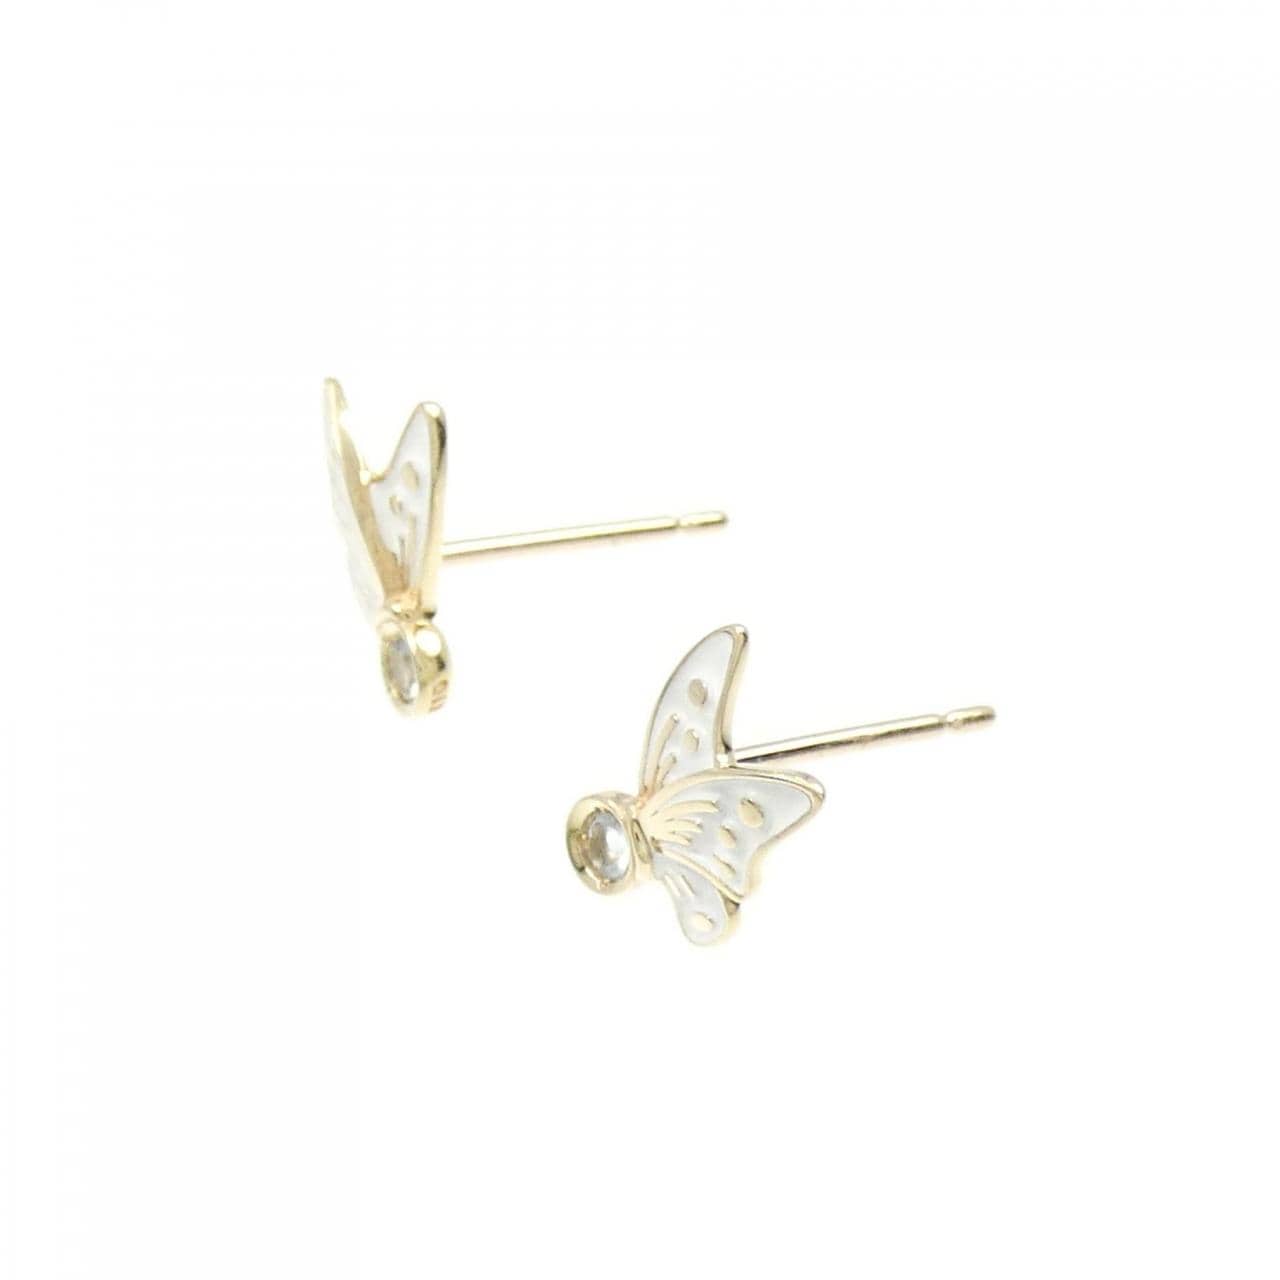 STAR JEWELRY Butterfly Resin Earrings